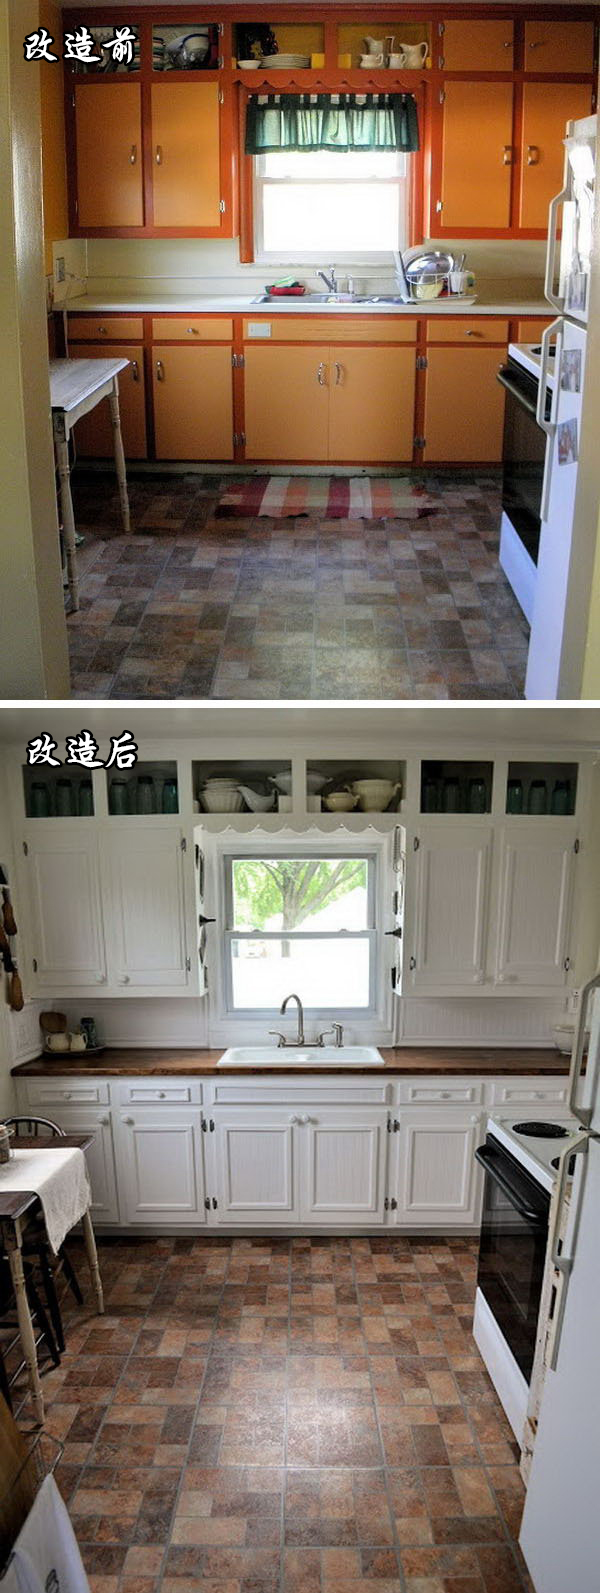 厨房收纳前后对比图片